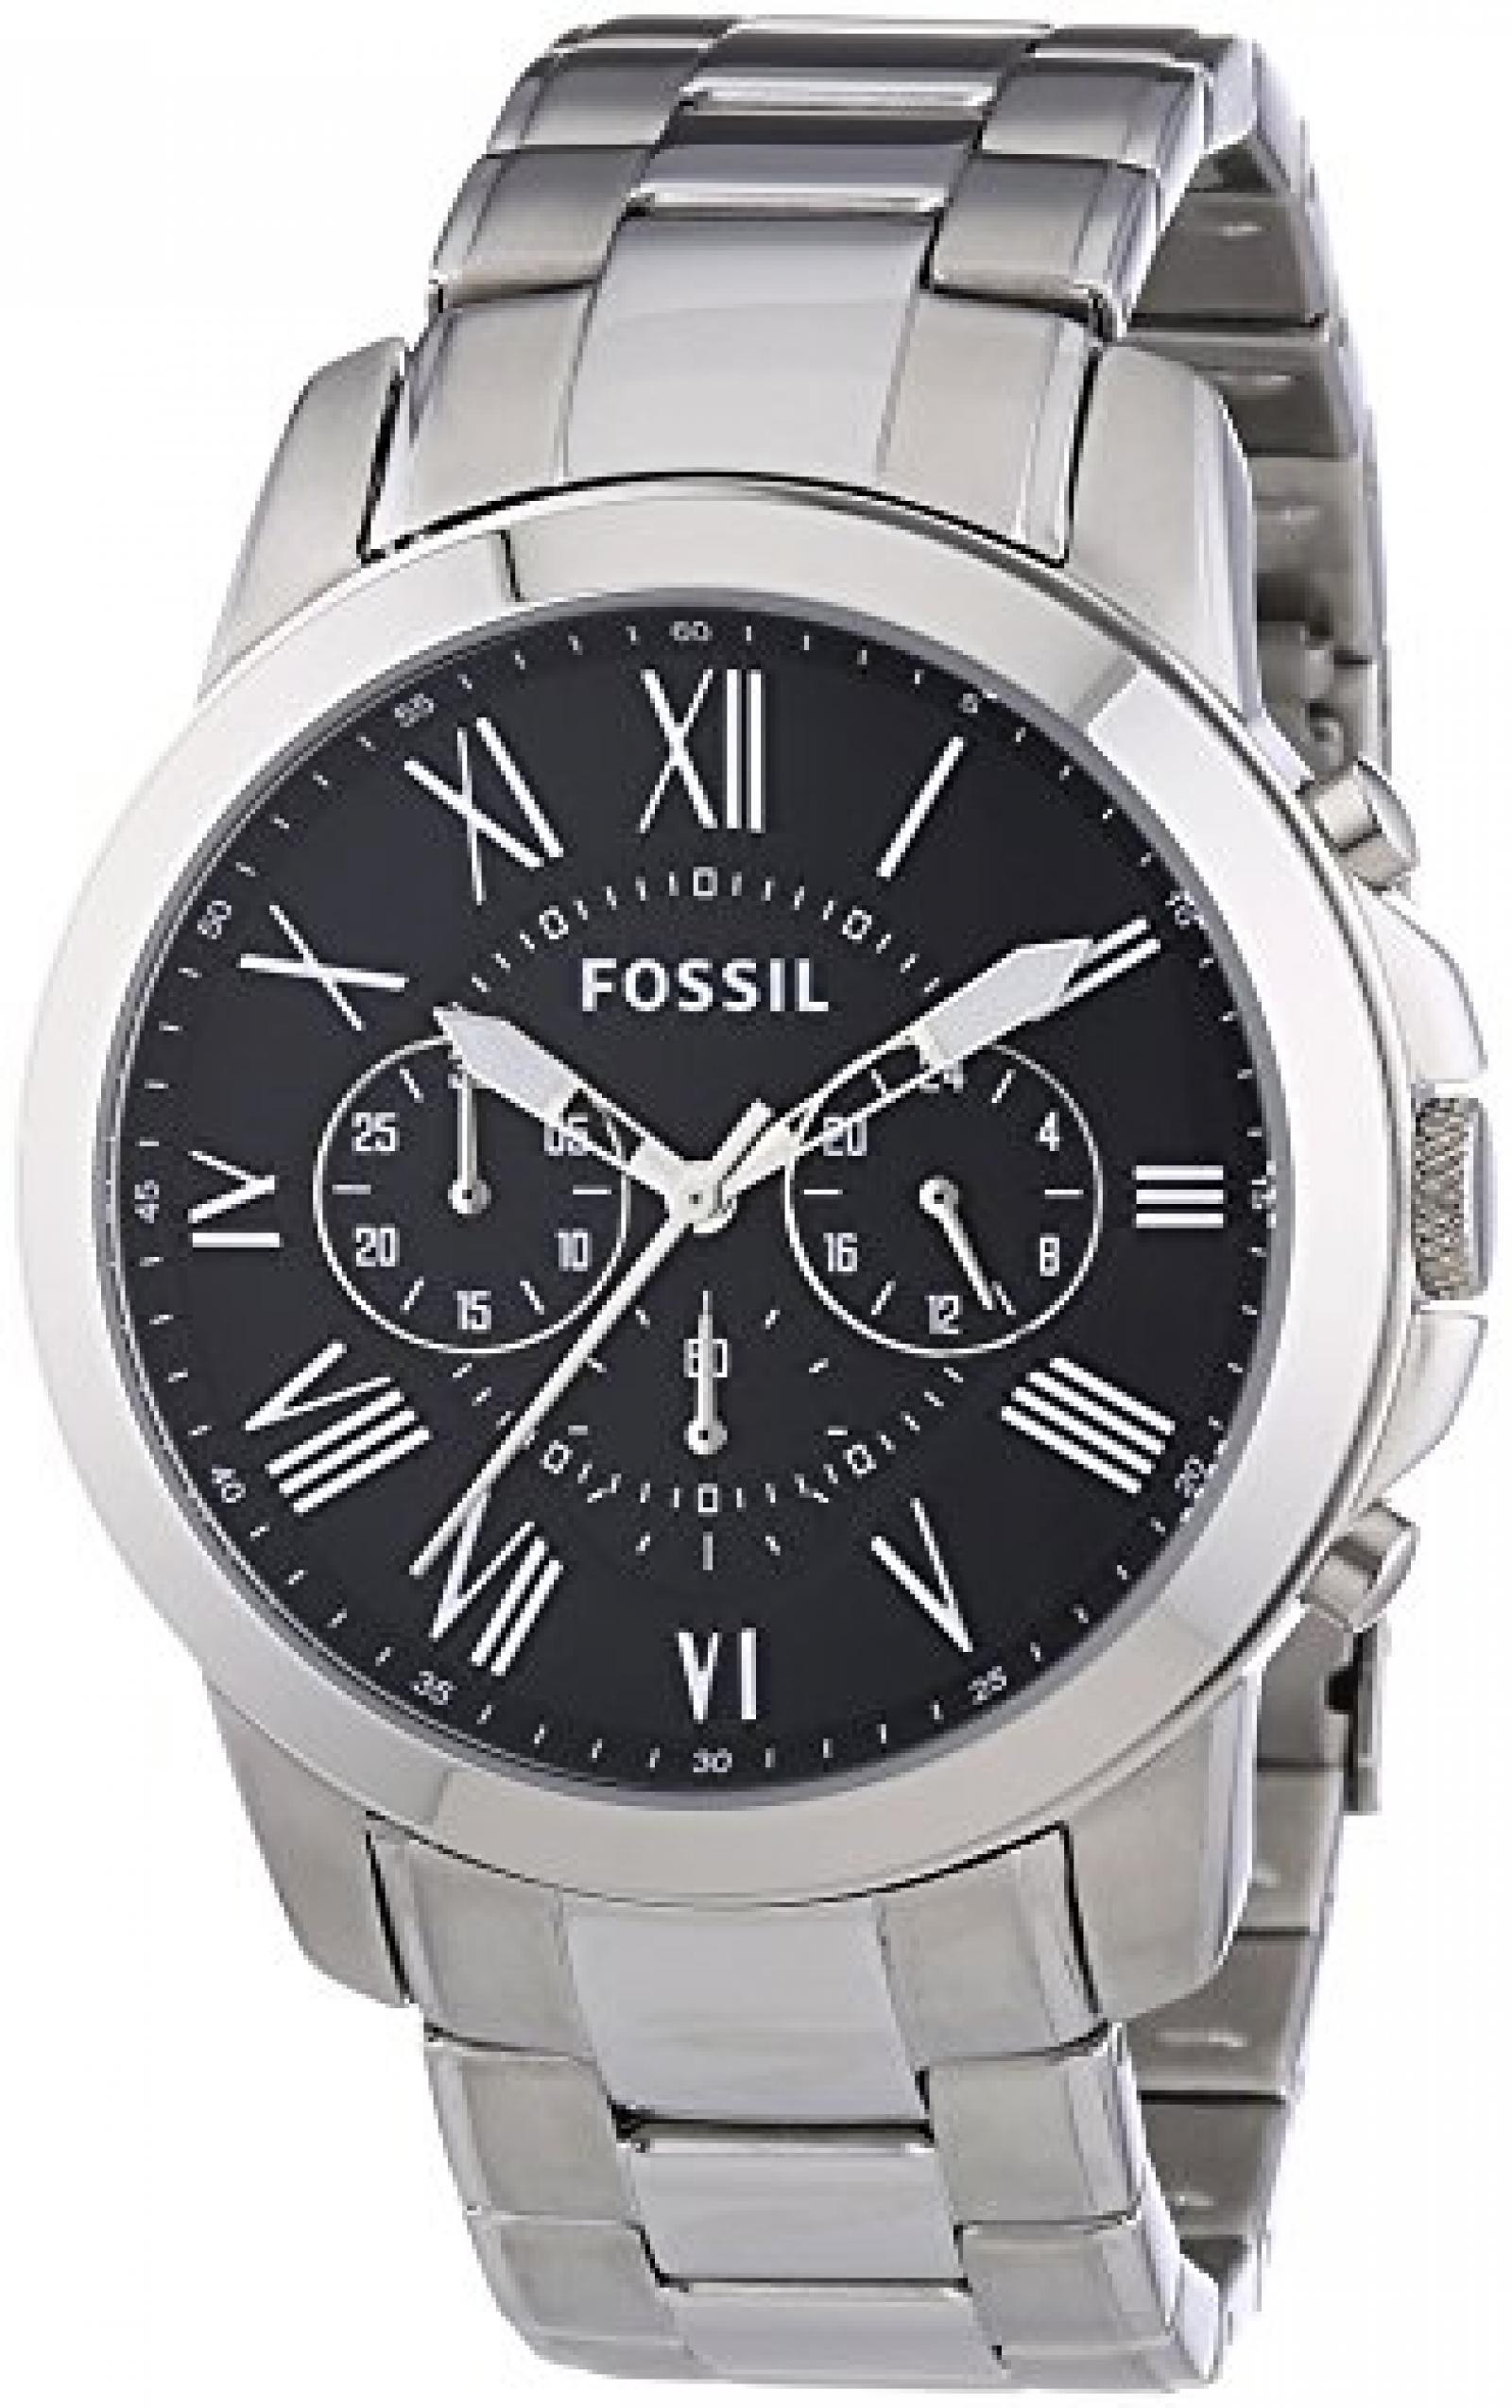 Fossil Herren-Armbanduhr XL Chronograph Edelstahl FS4736 